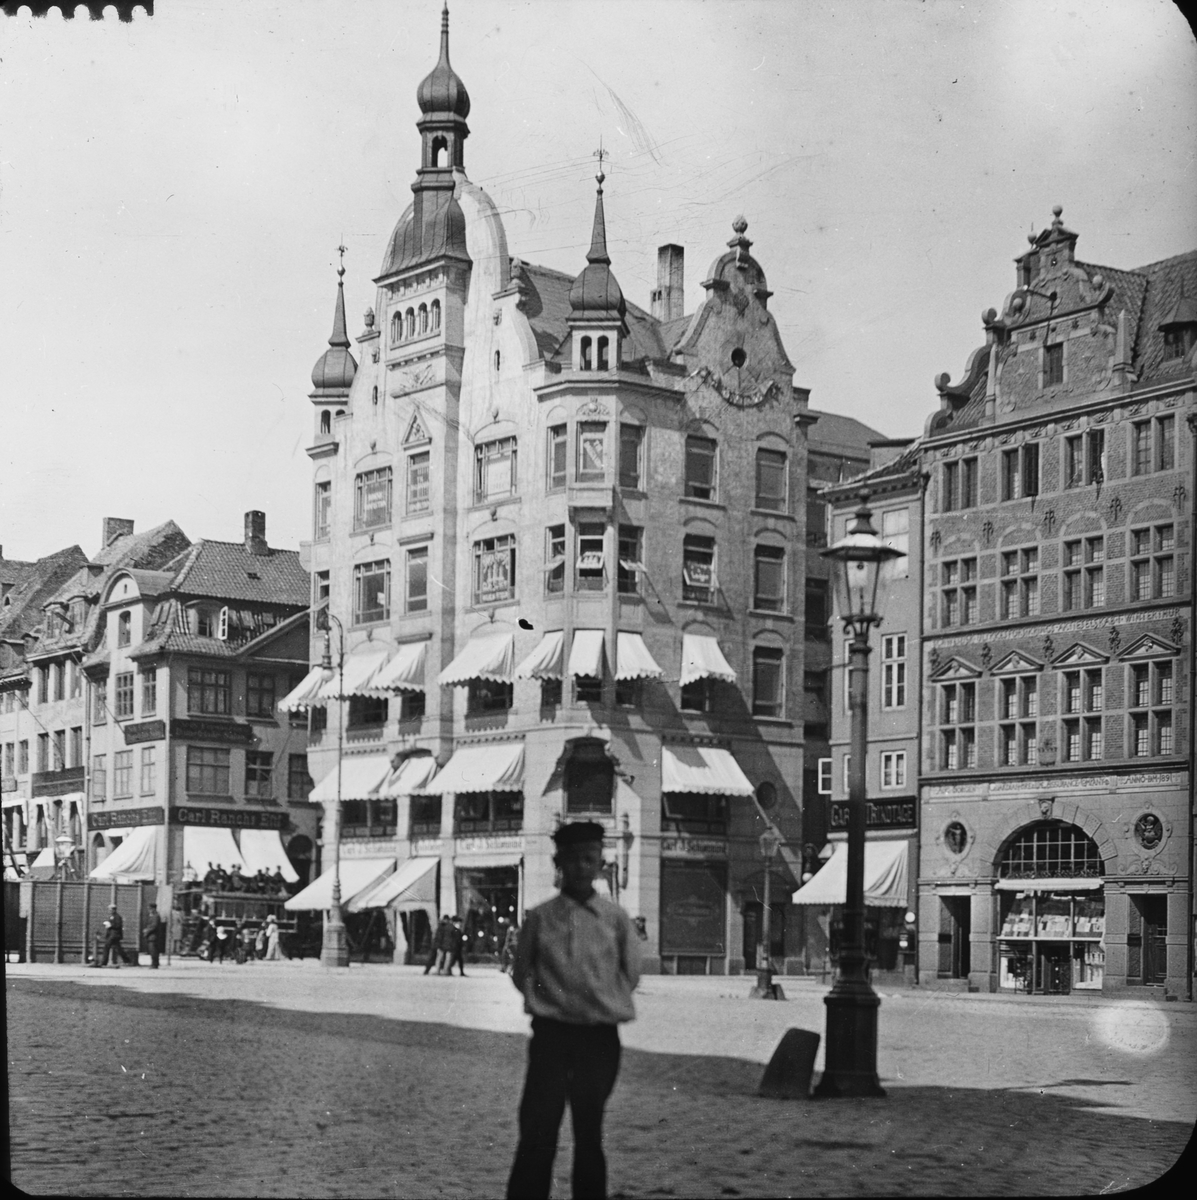 Skioptikonbild med motiv från Amagertorv i Köpenhamn vid sekelskiftet 1900.
Bilden har förvarats i kartong märkt: ?